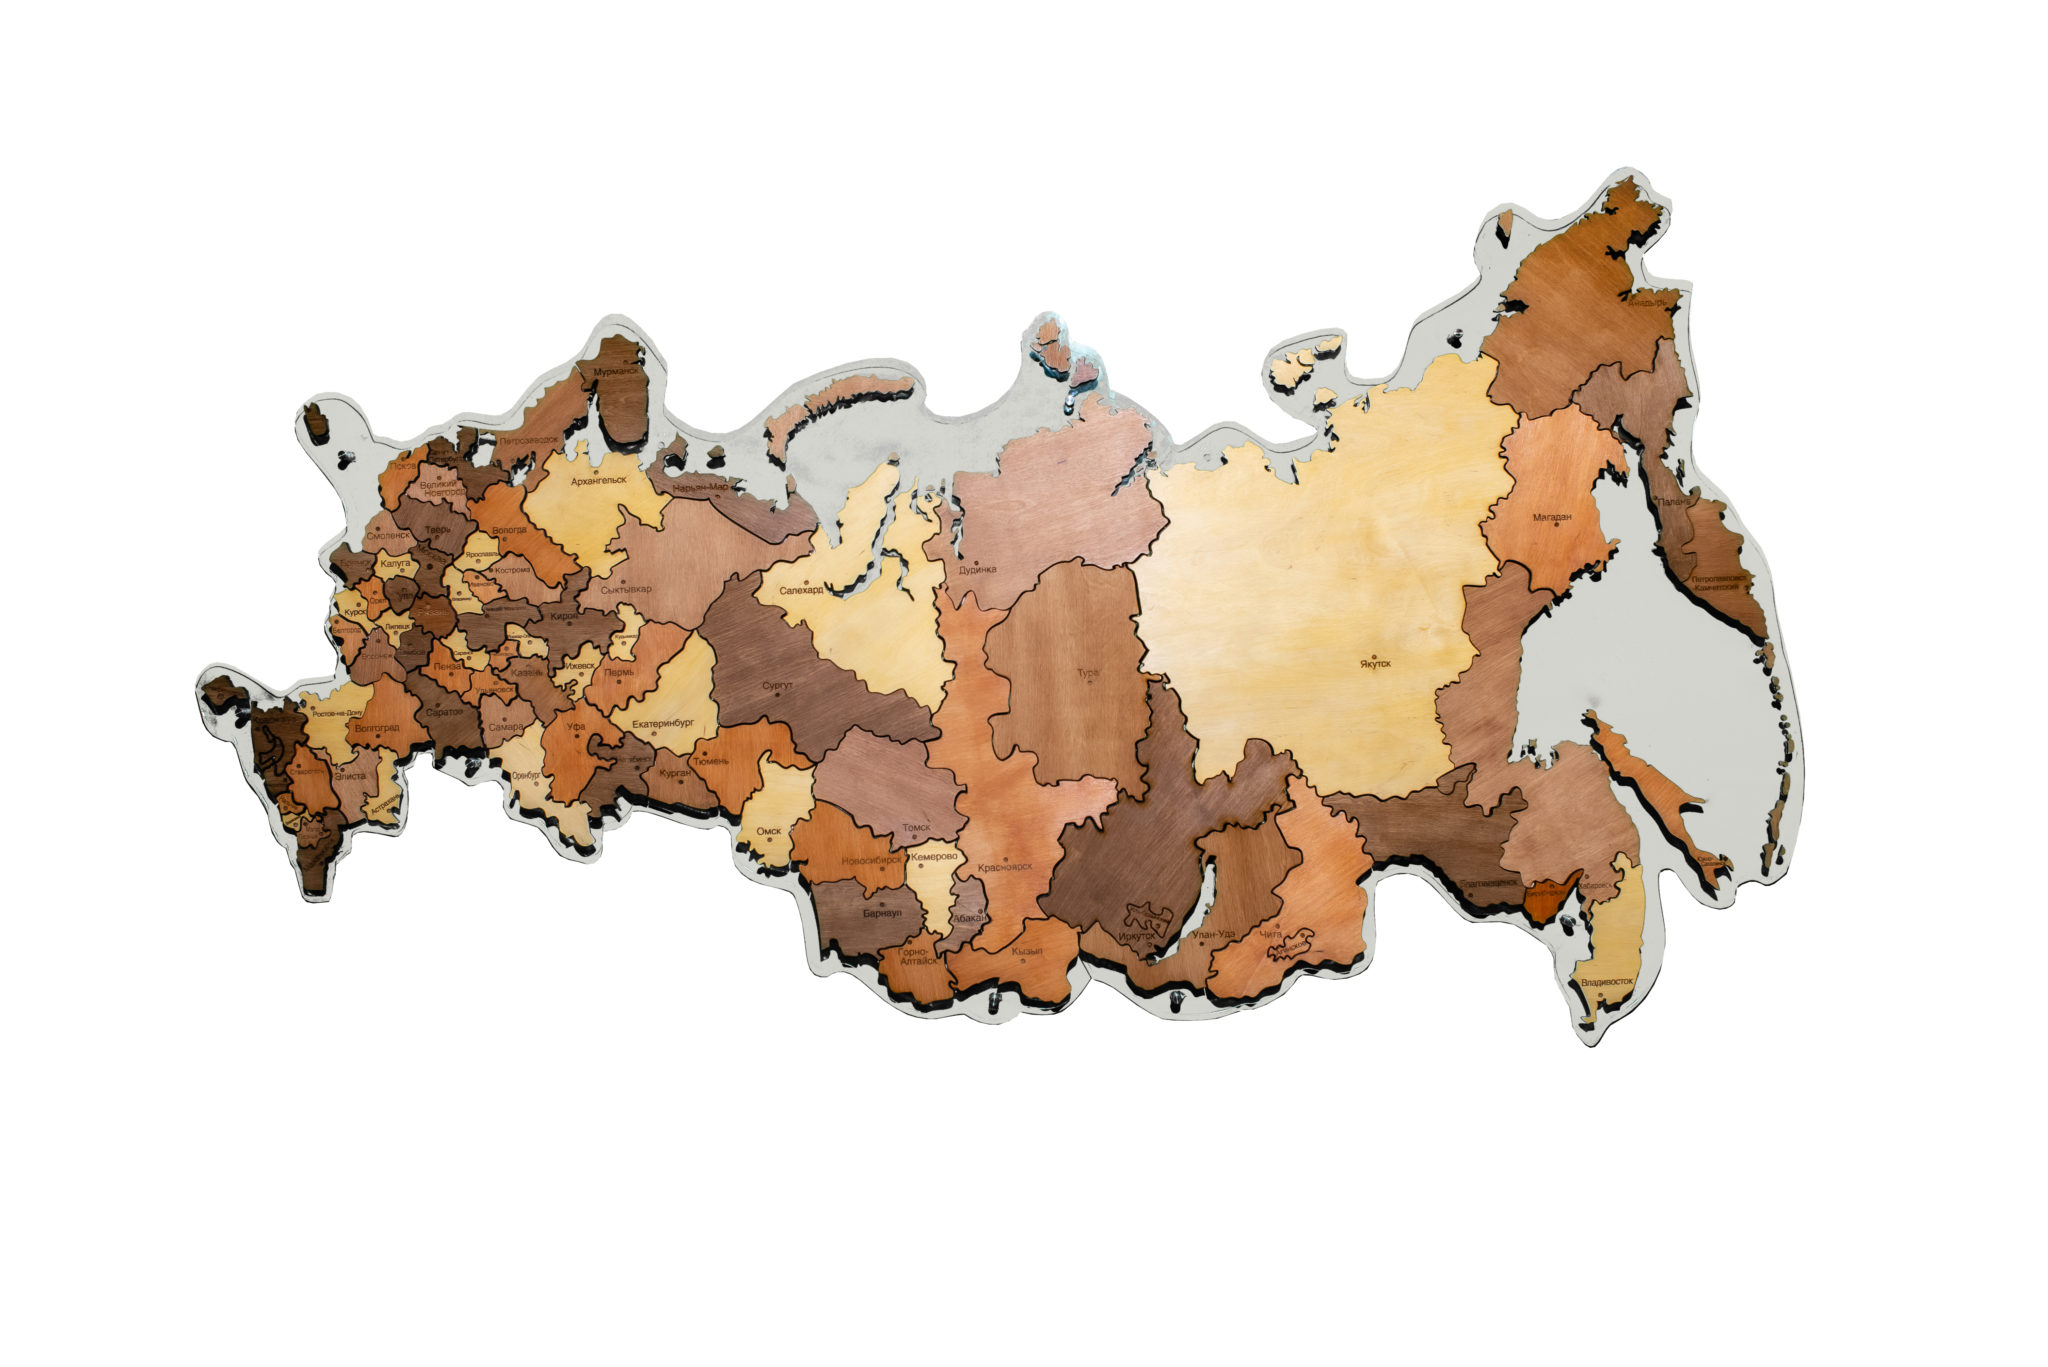 Деревянная карта России